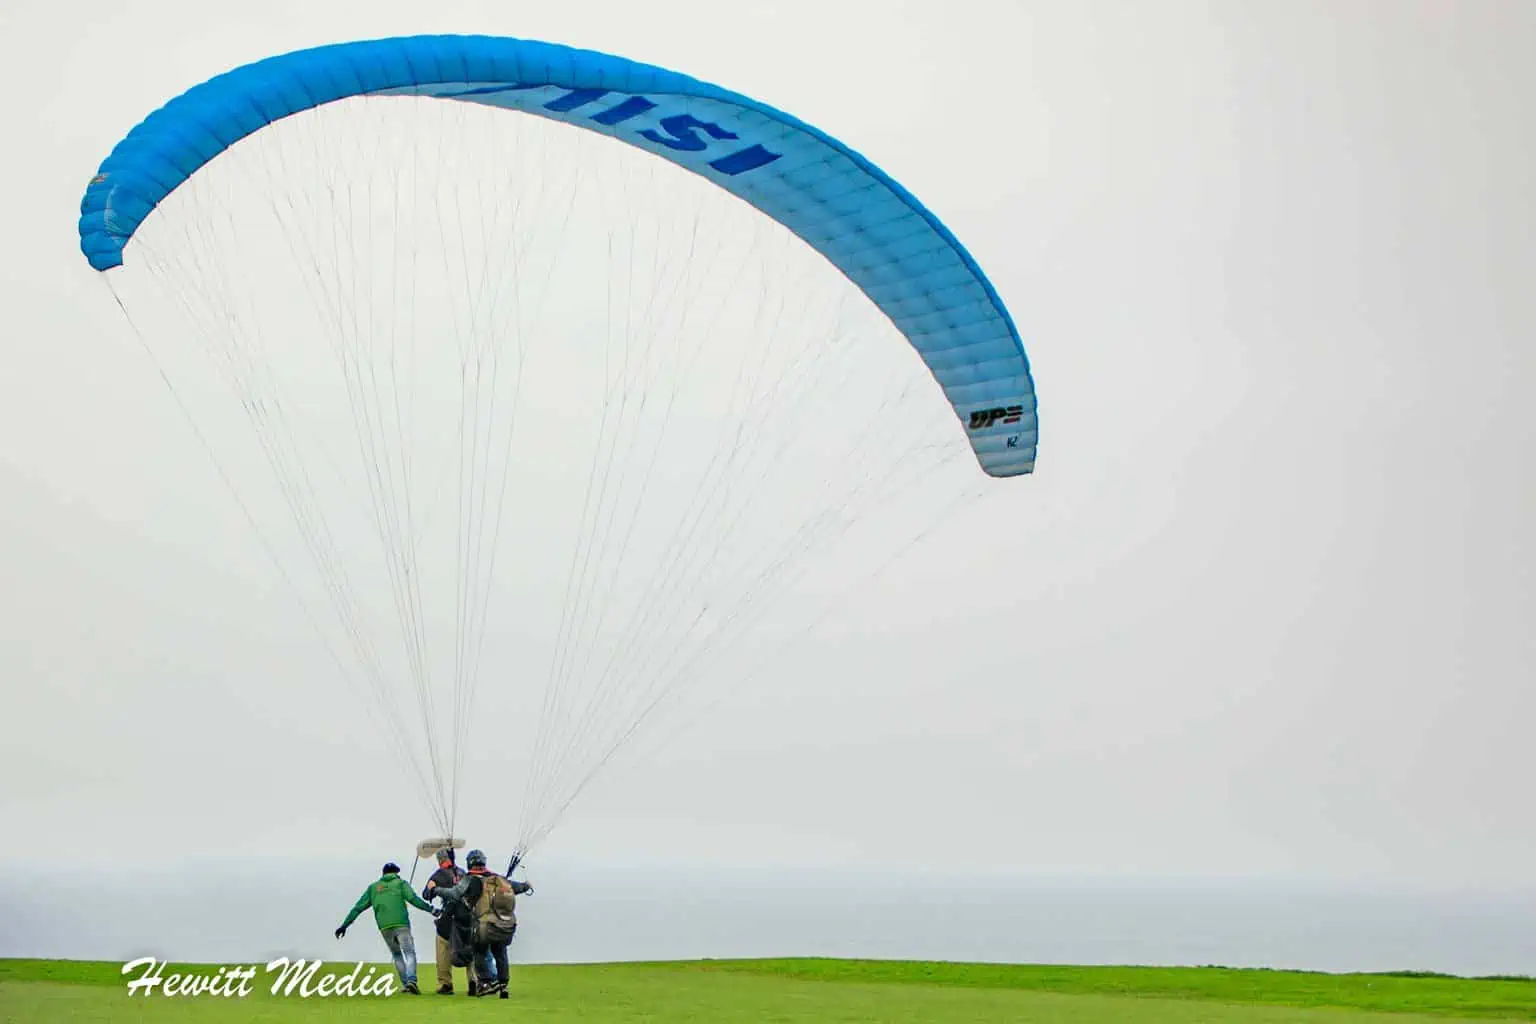 Lima Peru Travel Guide - Lima Paragliding